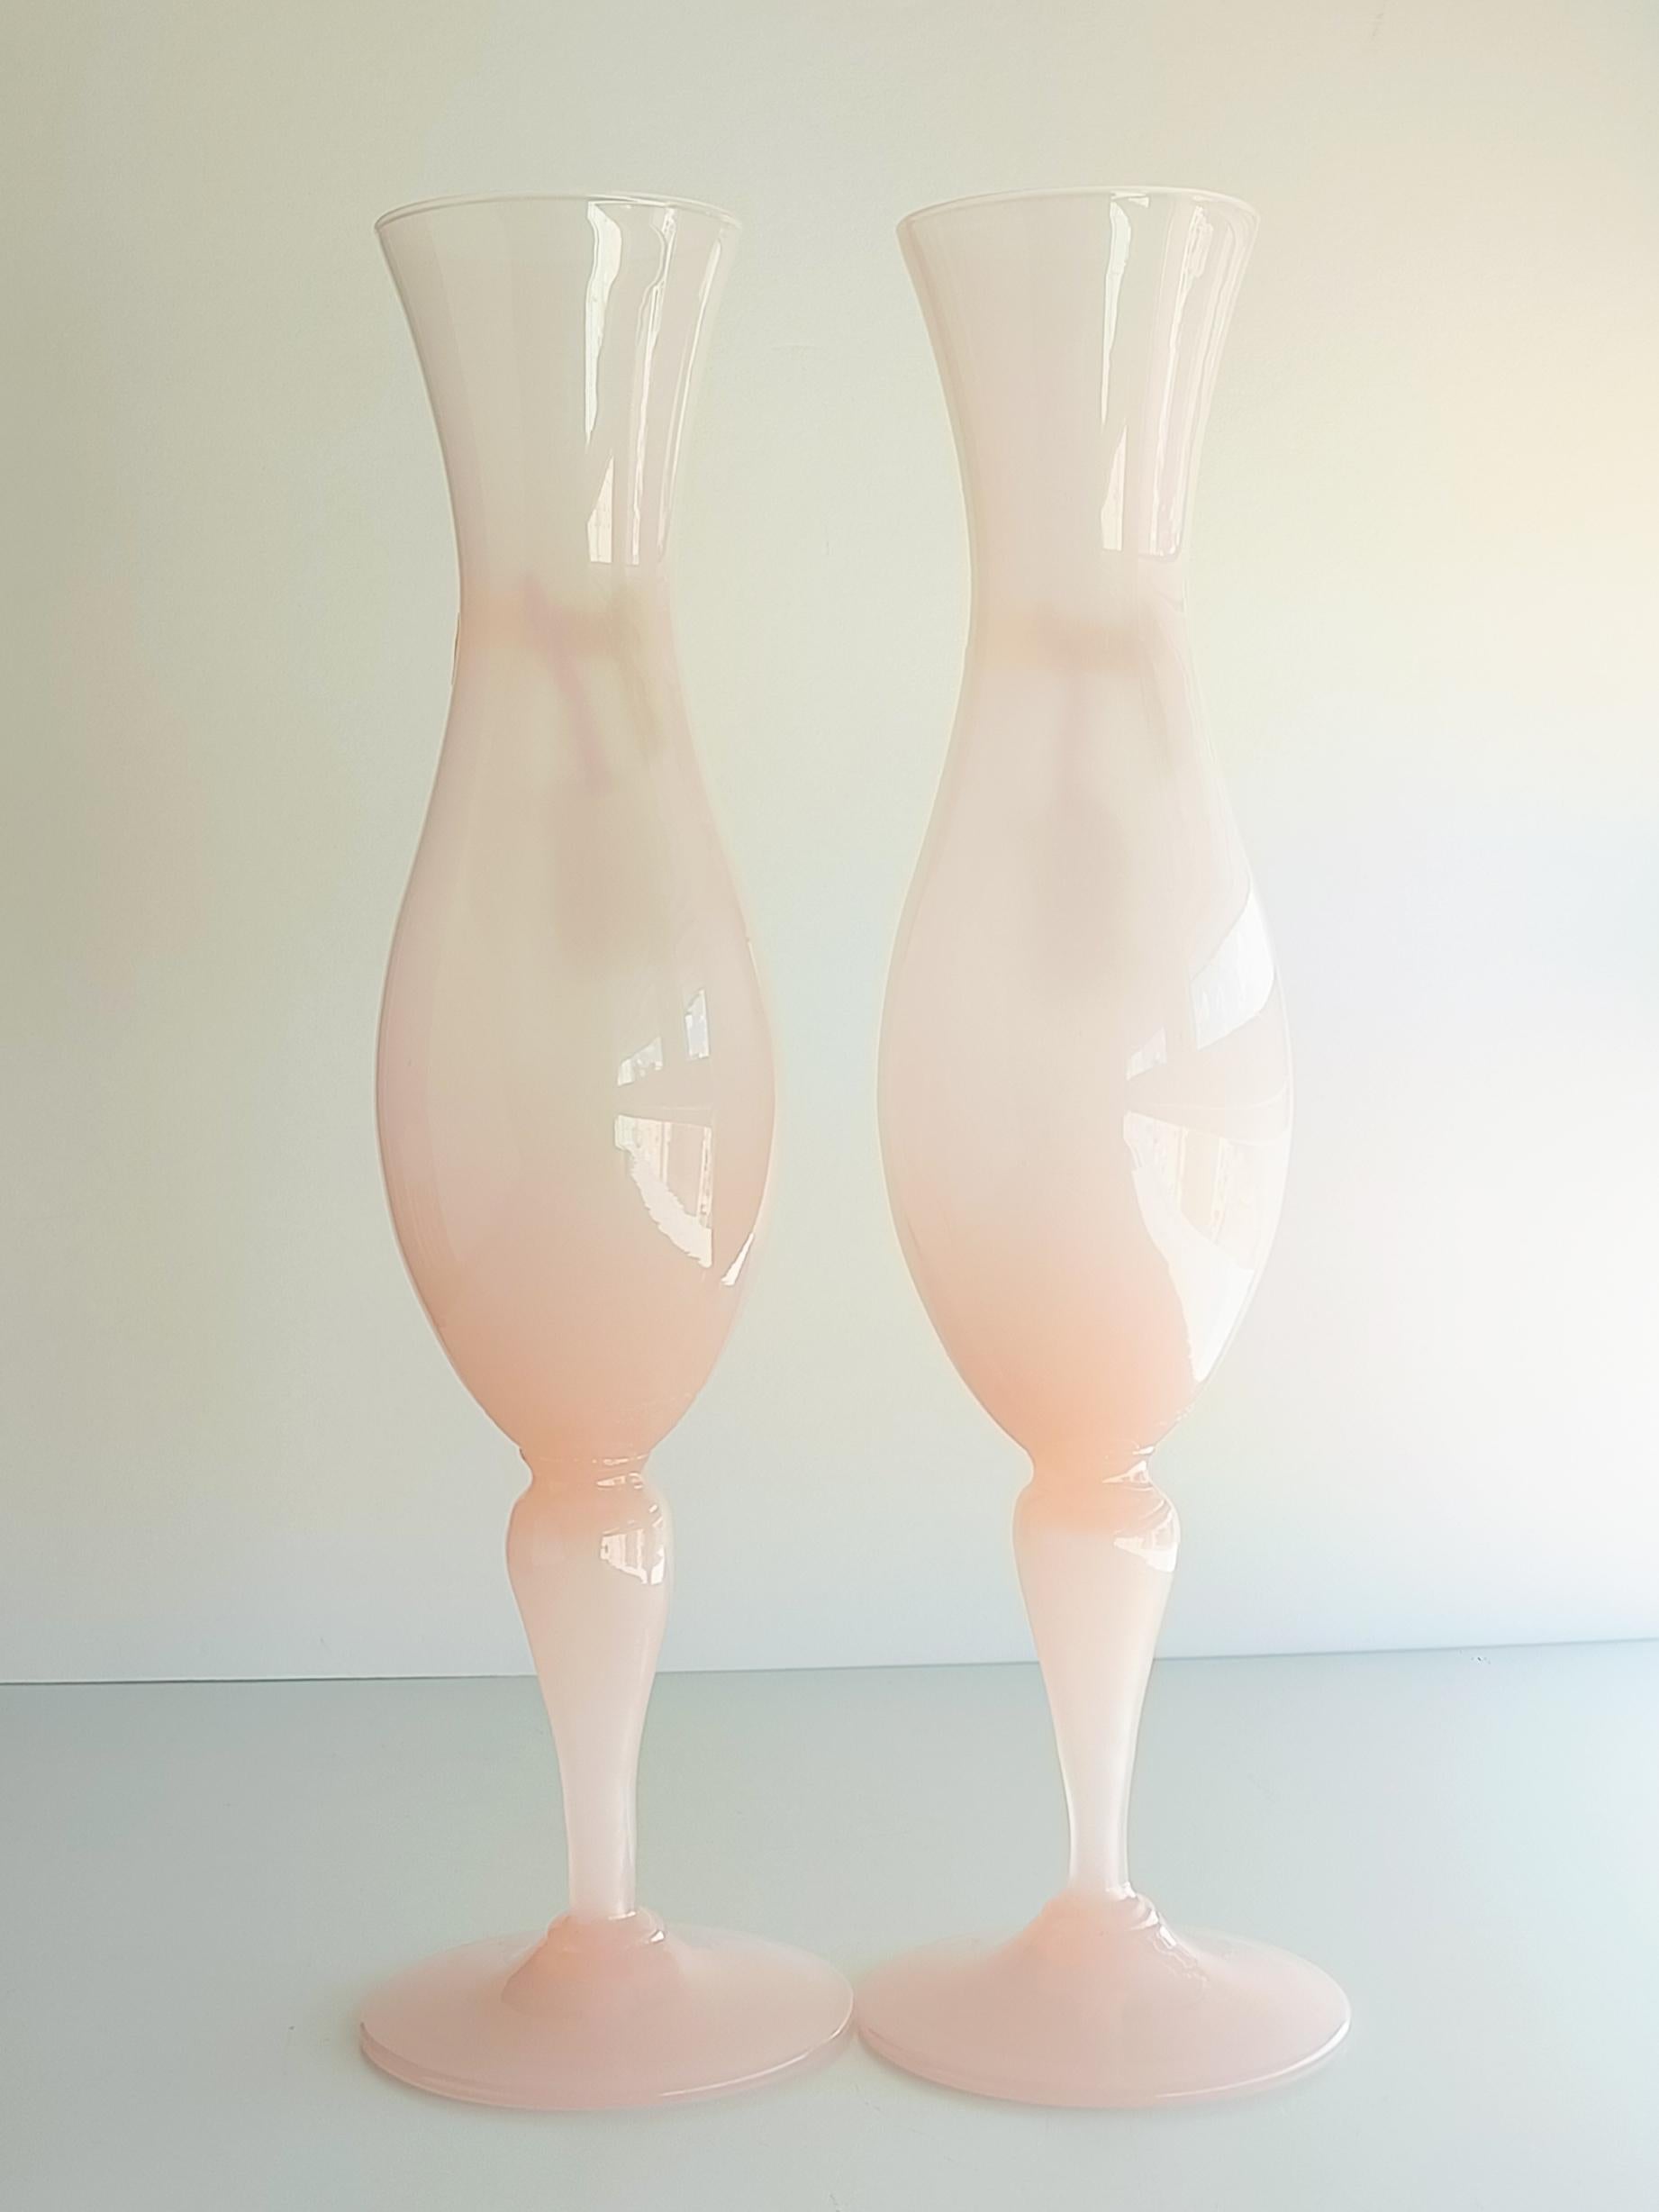 Mehr als elegante große, perlmuttartig durchscheinende, echte Opalglasvasen aus Empoli mit dem Label Opalina Florentina.

Diese Vasen lagerten jahrzehntelang (seit den 1950er Jahren) im Keller eines Geschenkartikelladens für Glas und Porzellan in